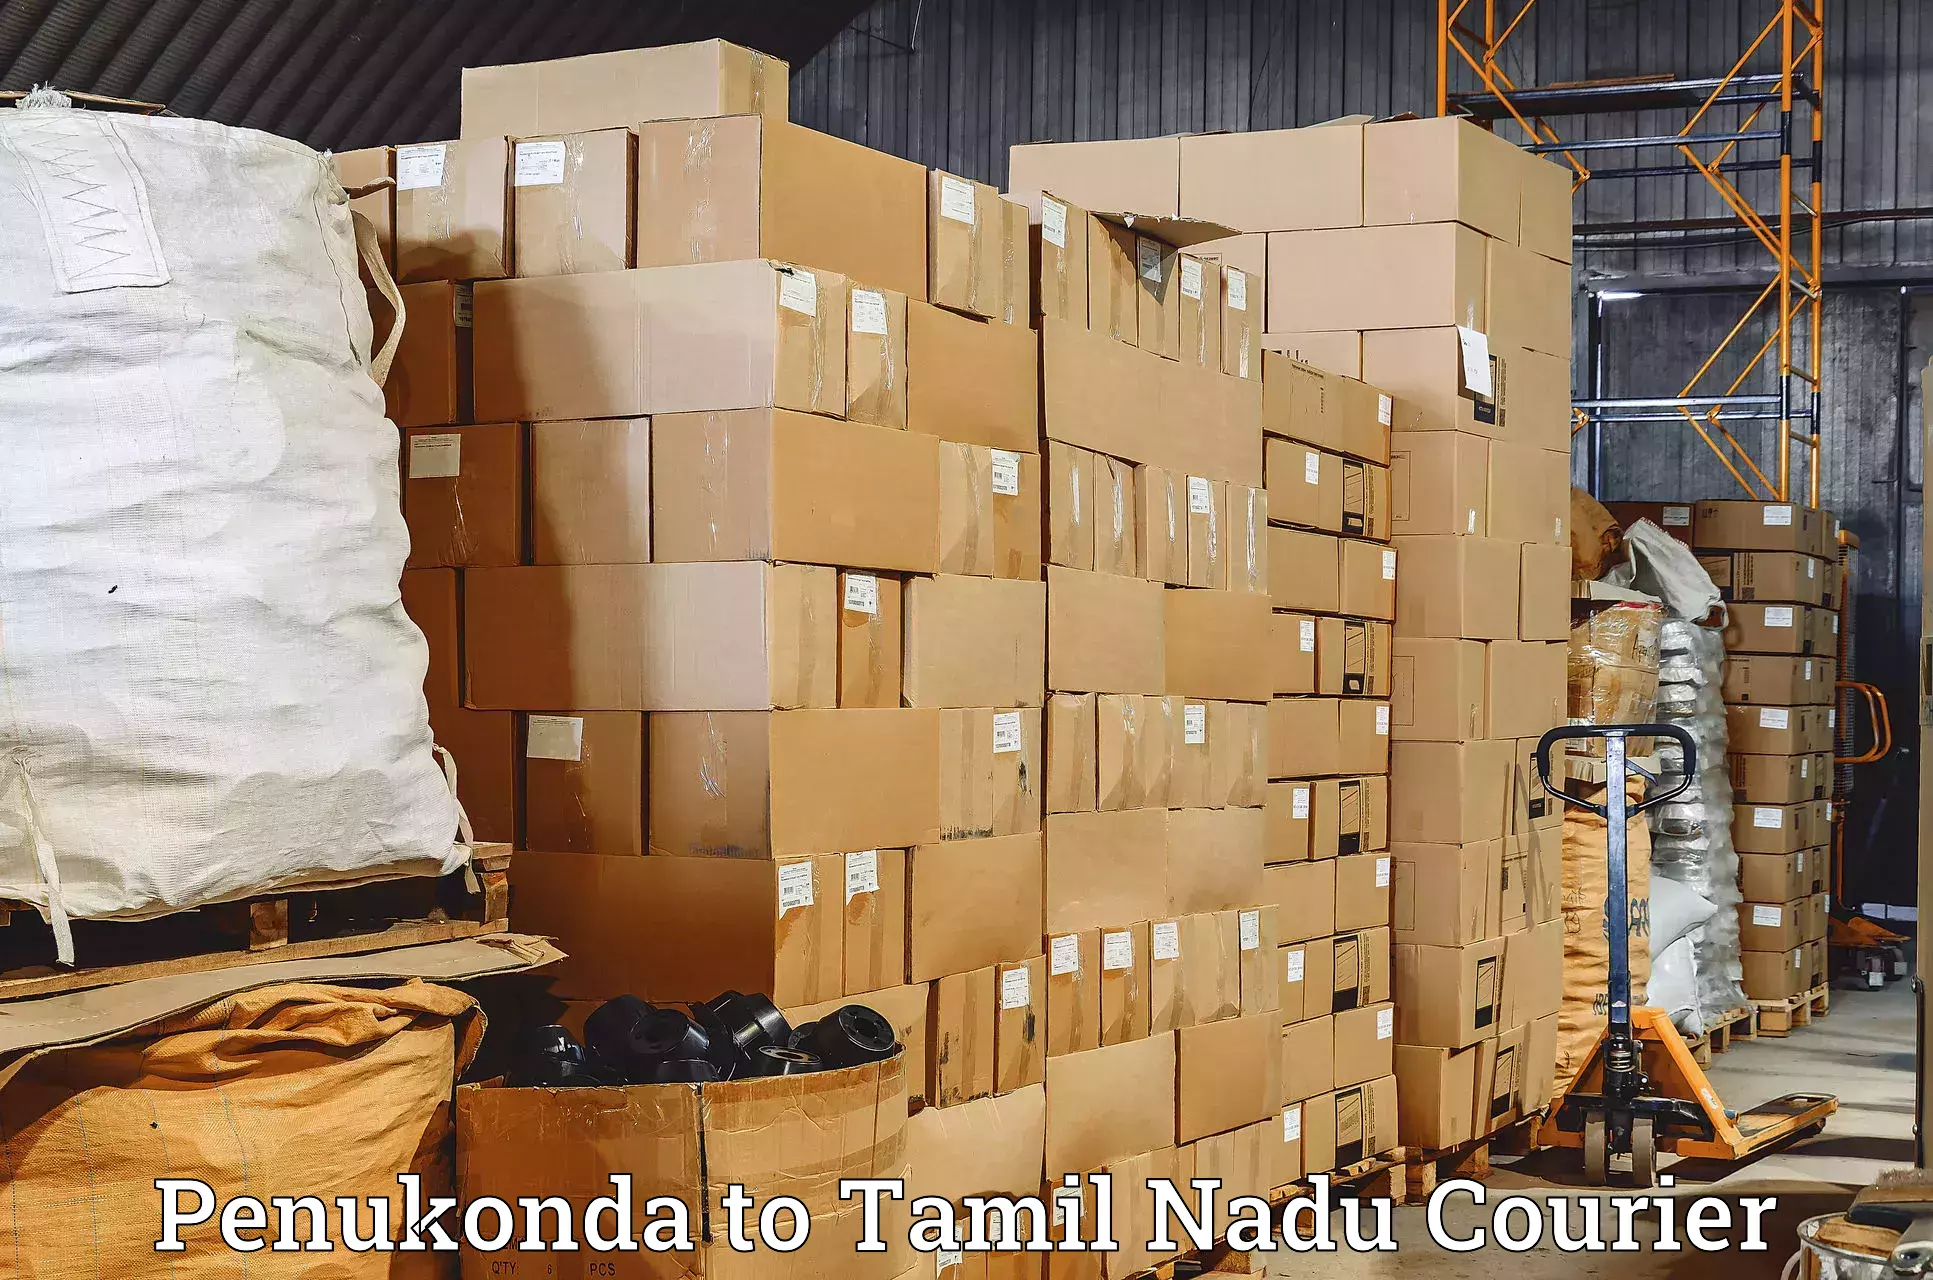 Bulk courier orders Penukonda to Thiruvadanai